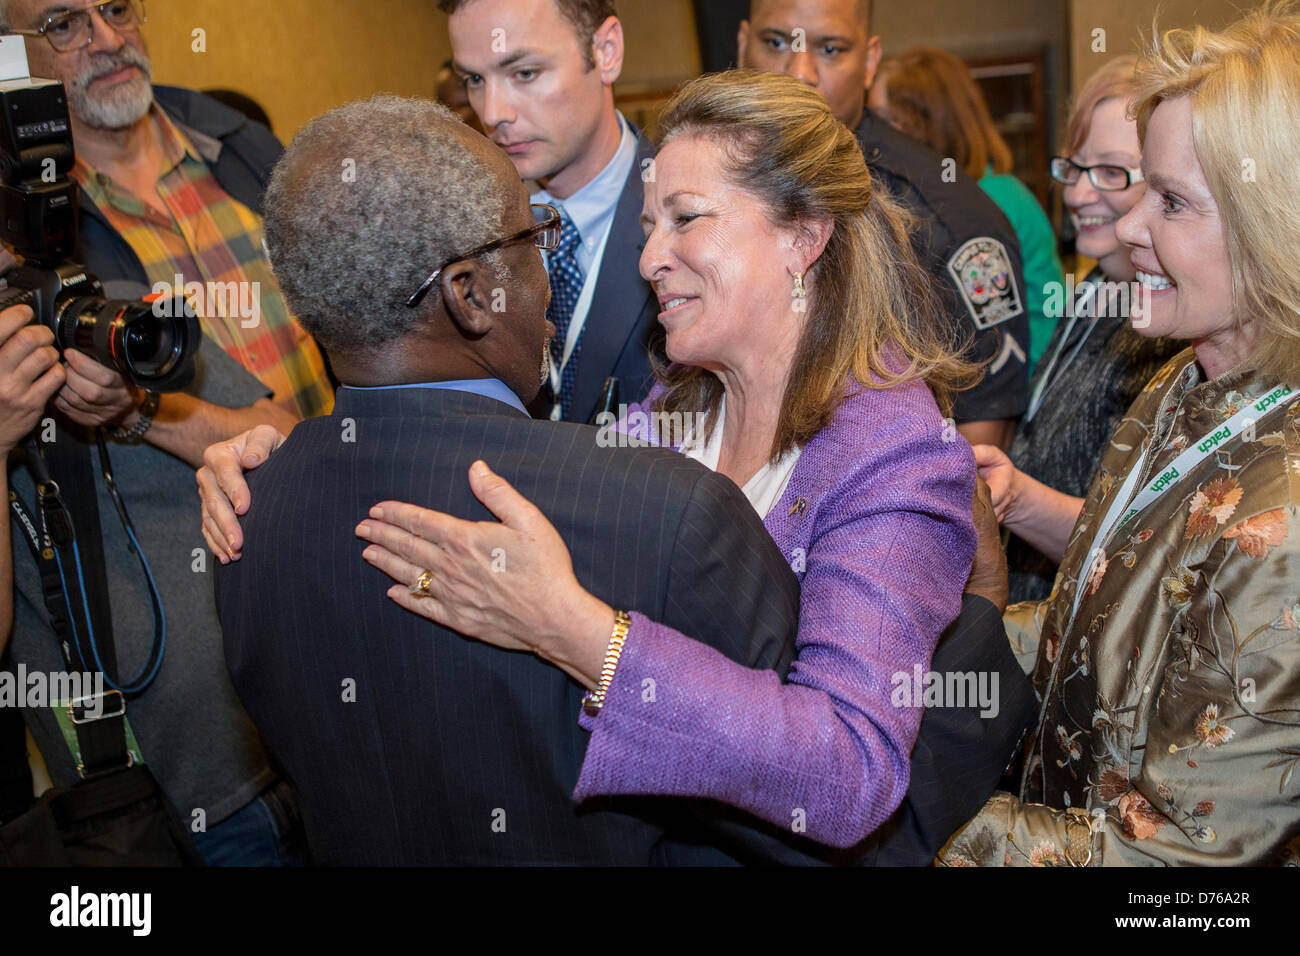 Elizabeth Colbert Busch el candidato demócrata para la curul es abrazado por un partidario tras su debate con el oponente republicano Gov. Mark Sanford en la Ciudadela el 29 de abril de 2013 en Charleston, Carolina del Sur. Foto de stock